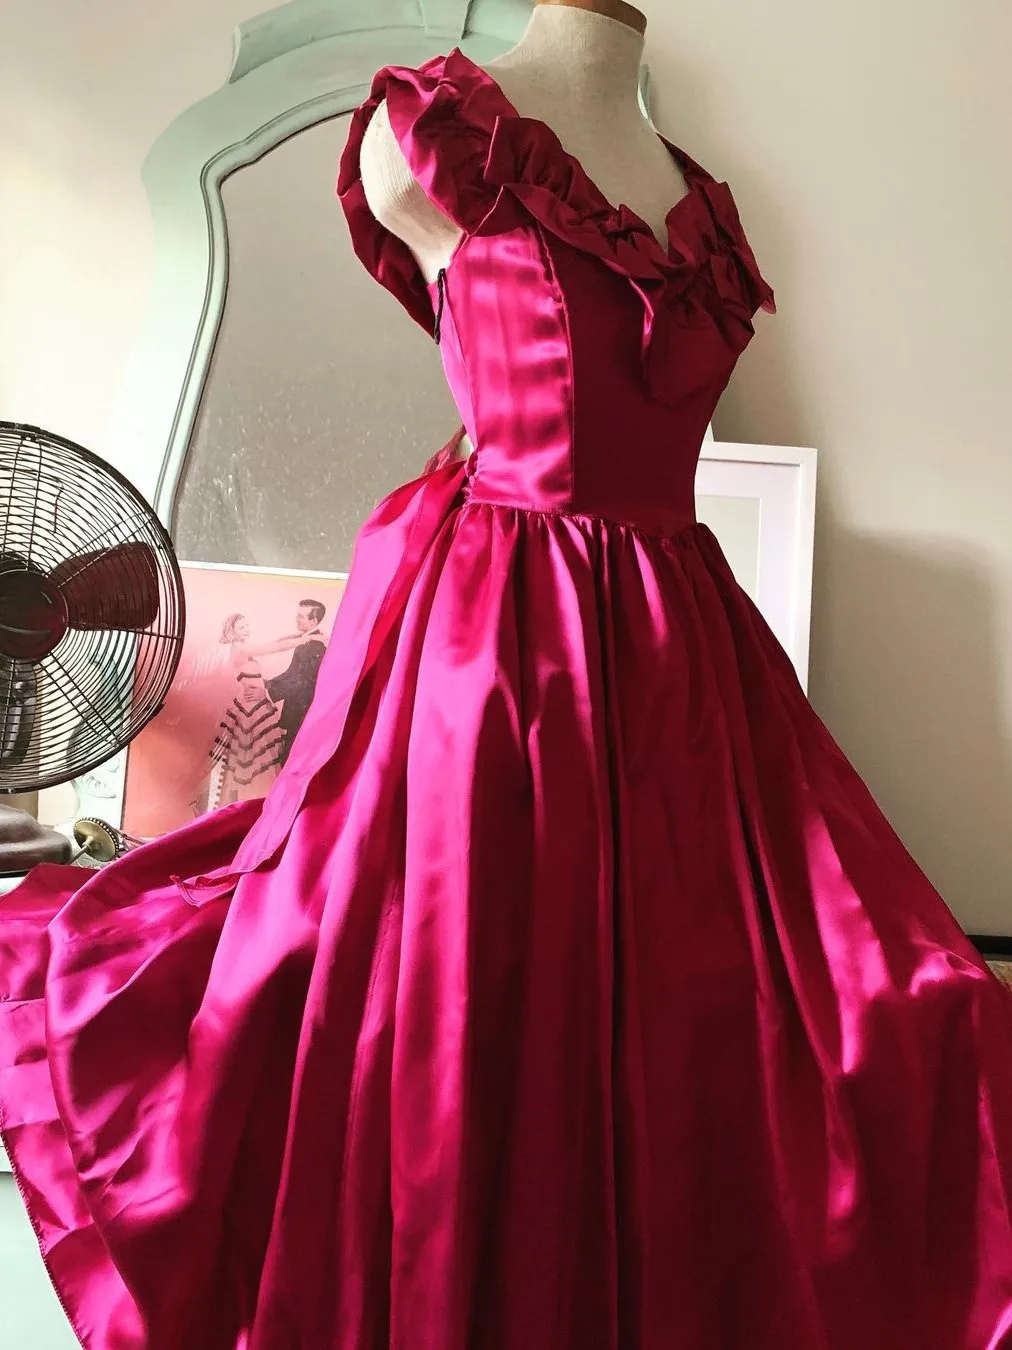 

Розово-фиолетовые Короткие коктейльные платья, модель 2023, строгие вечерние атласные платья